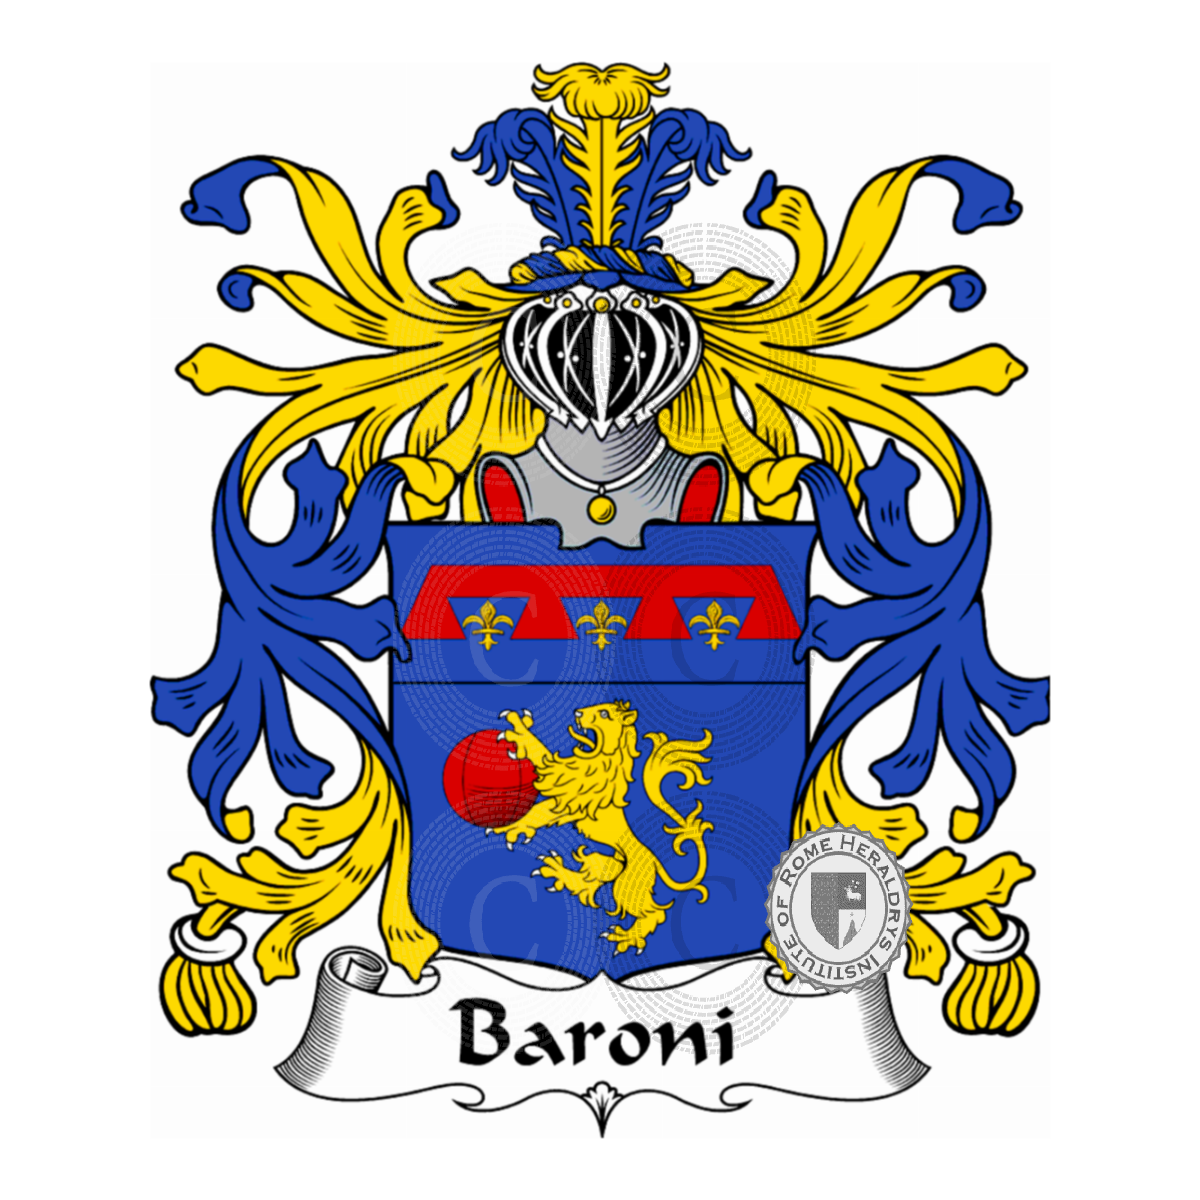 Escudo de la familiaBaroni, Barroni (America delSud)